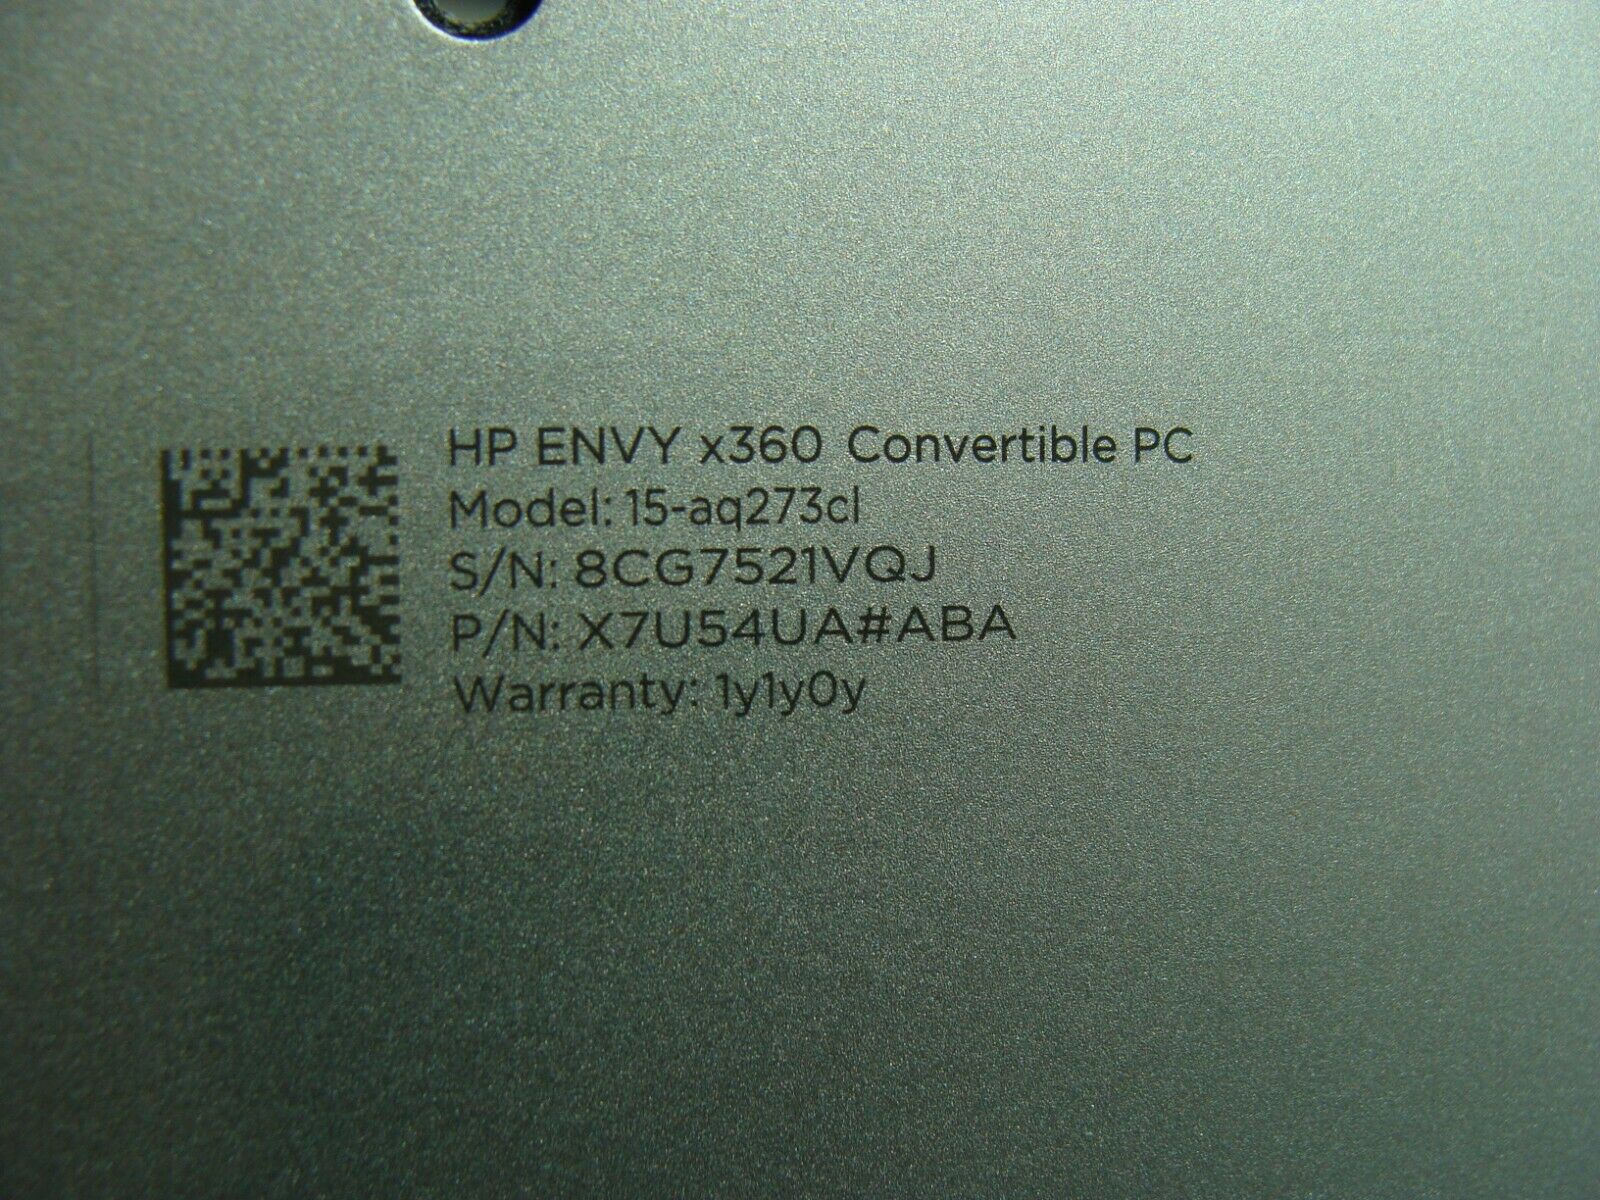 HP Envy 15.6